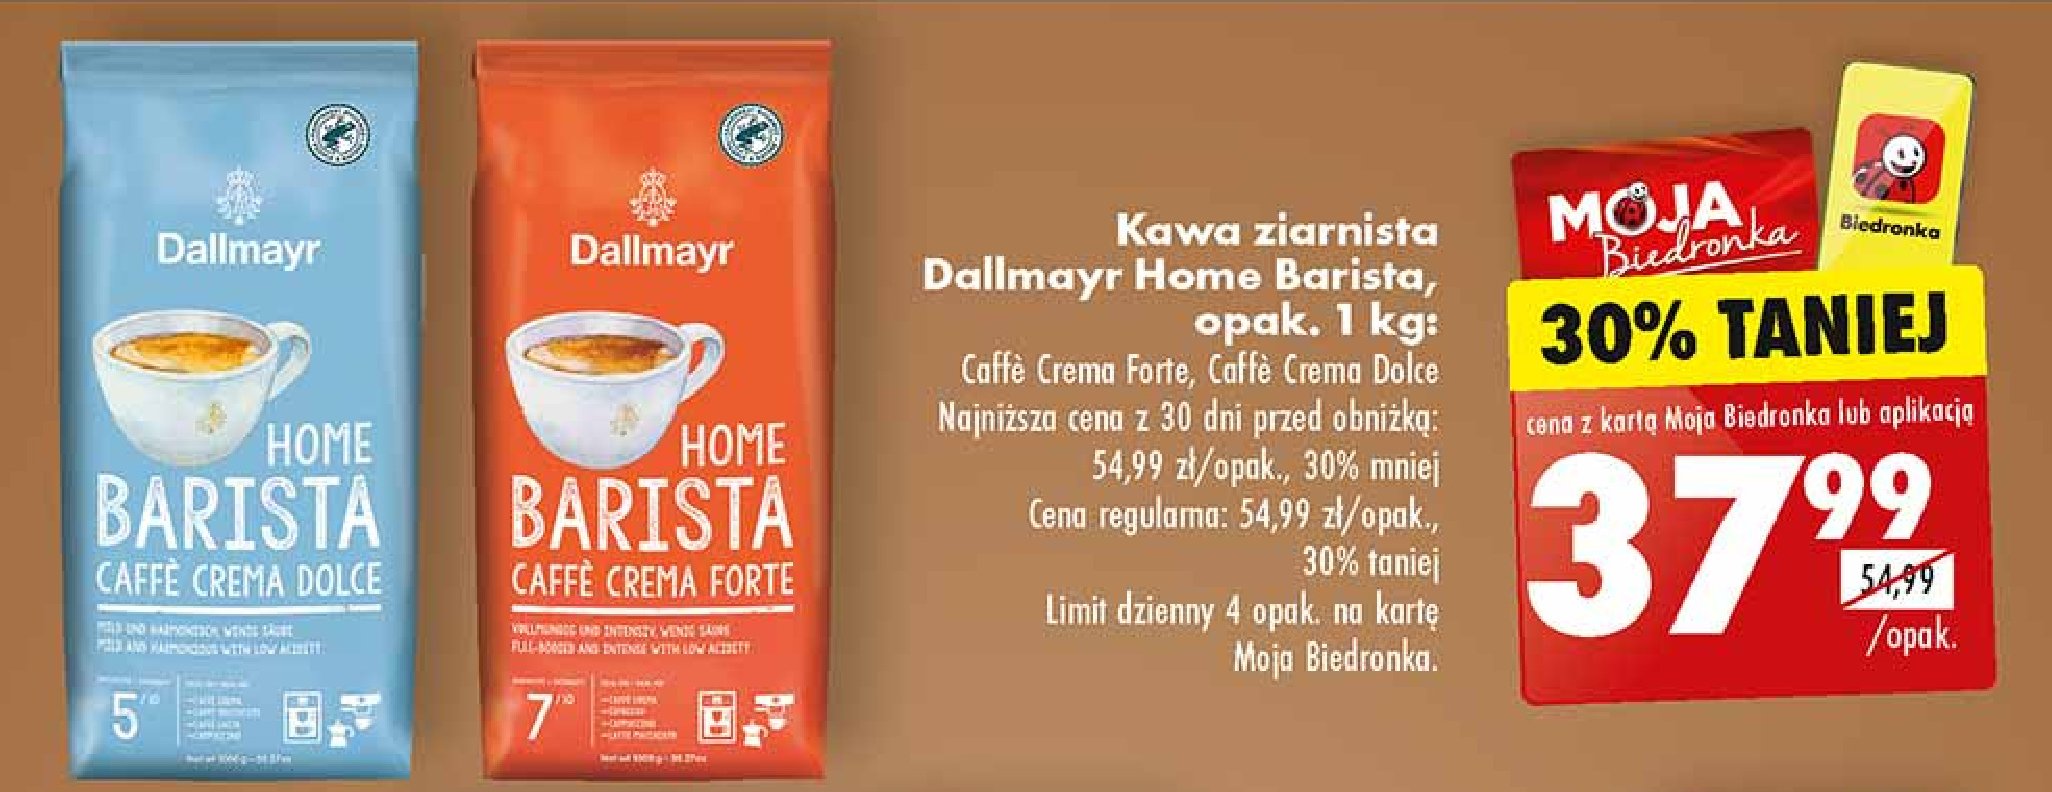 Kawa Dallmayr home barista caffe crema dolce promocja